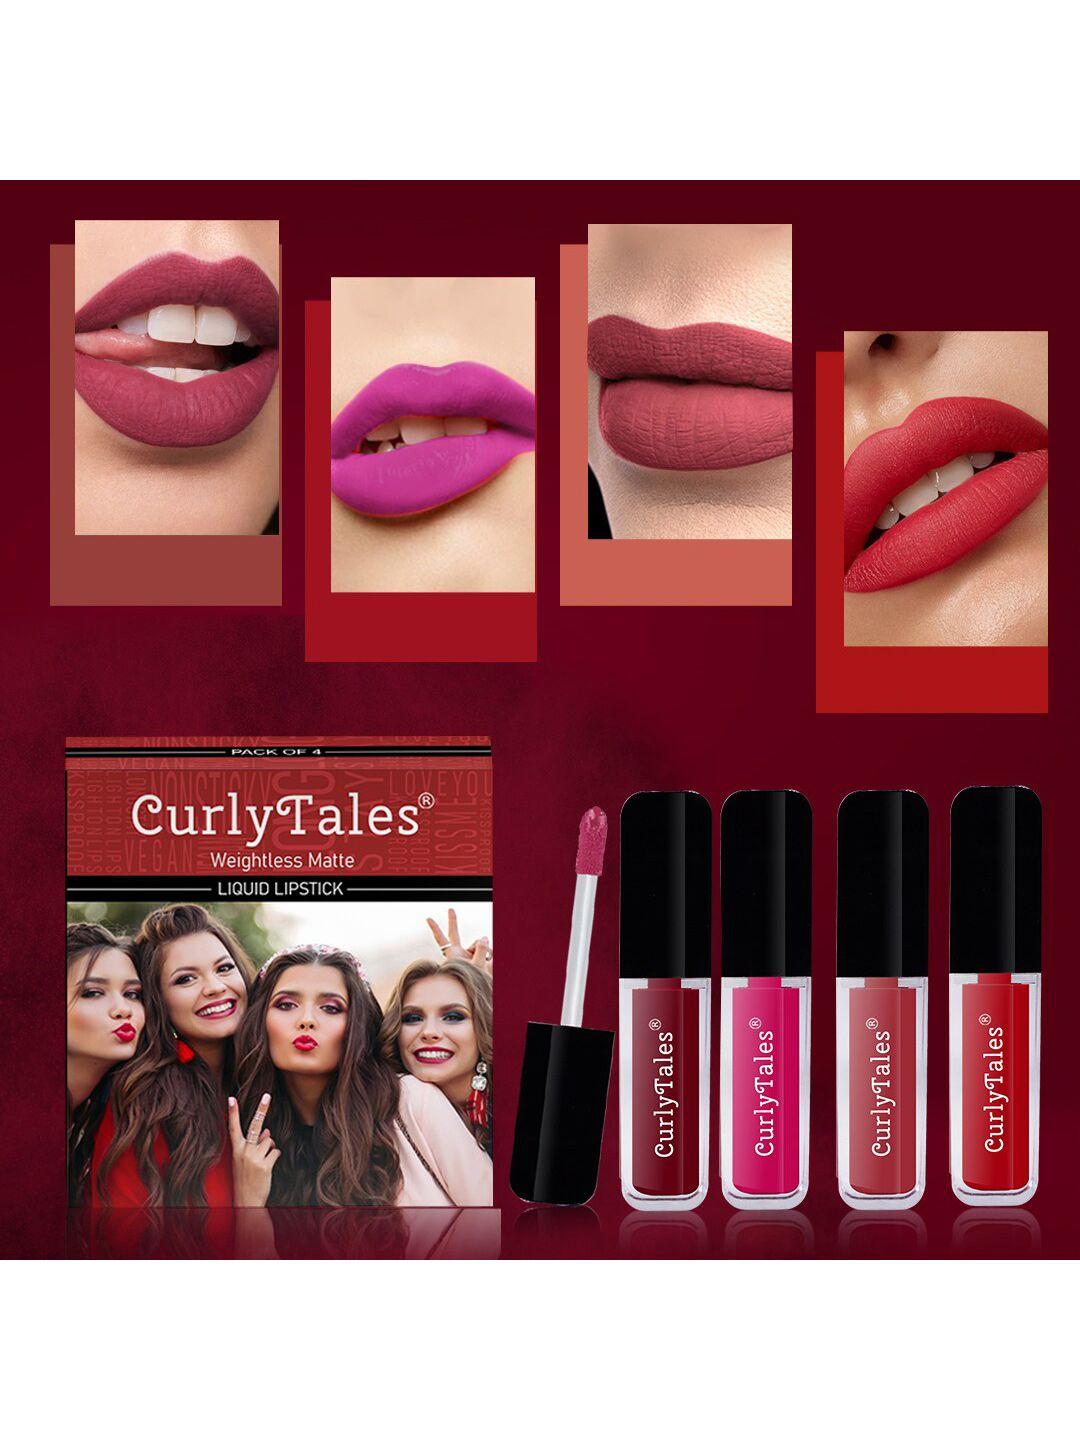 curlytales-set-of-4-weightless-matte-liquid-lipstick---3-ml-each